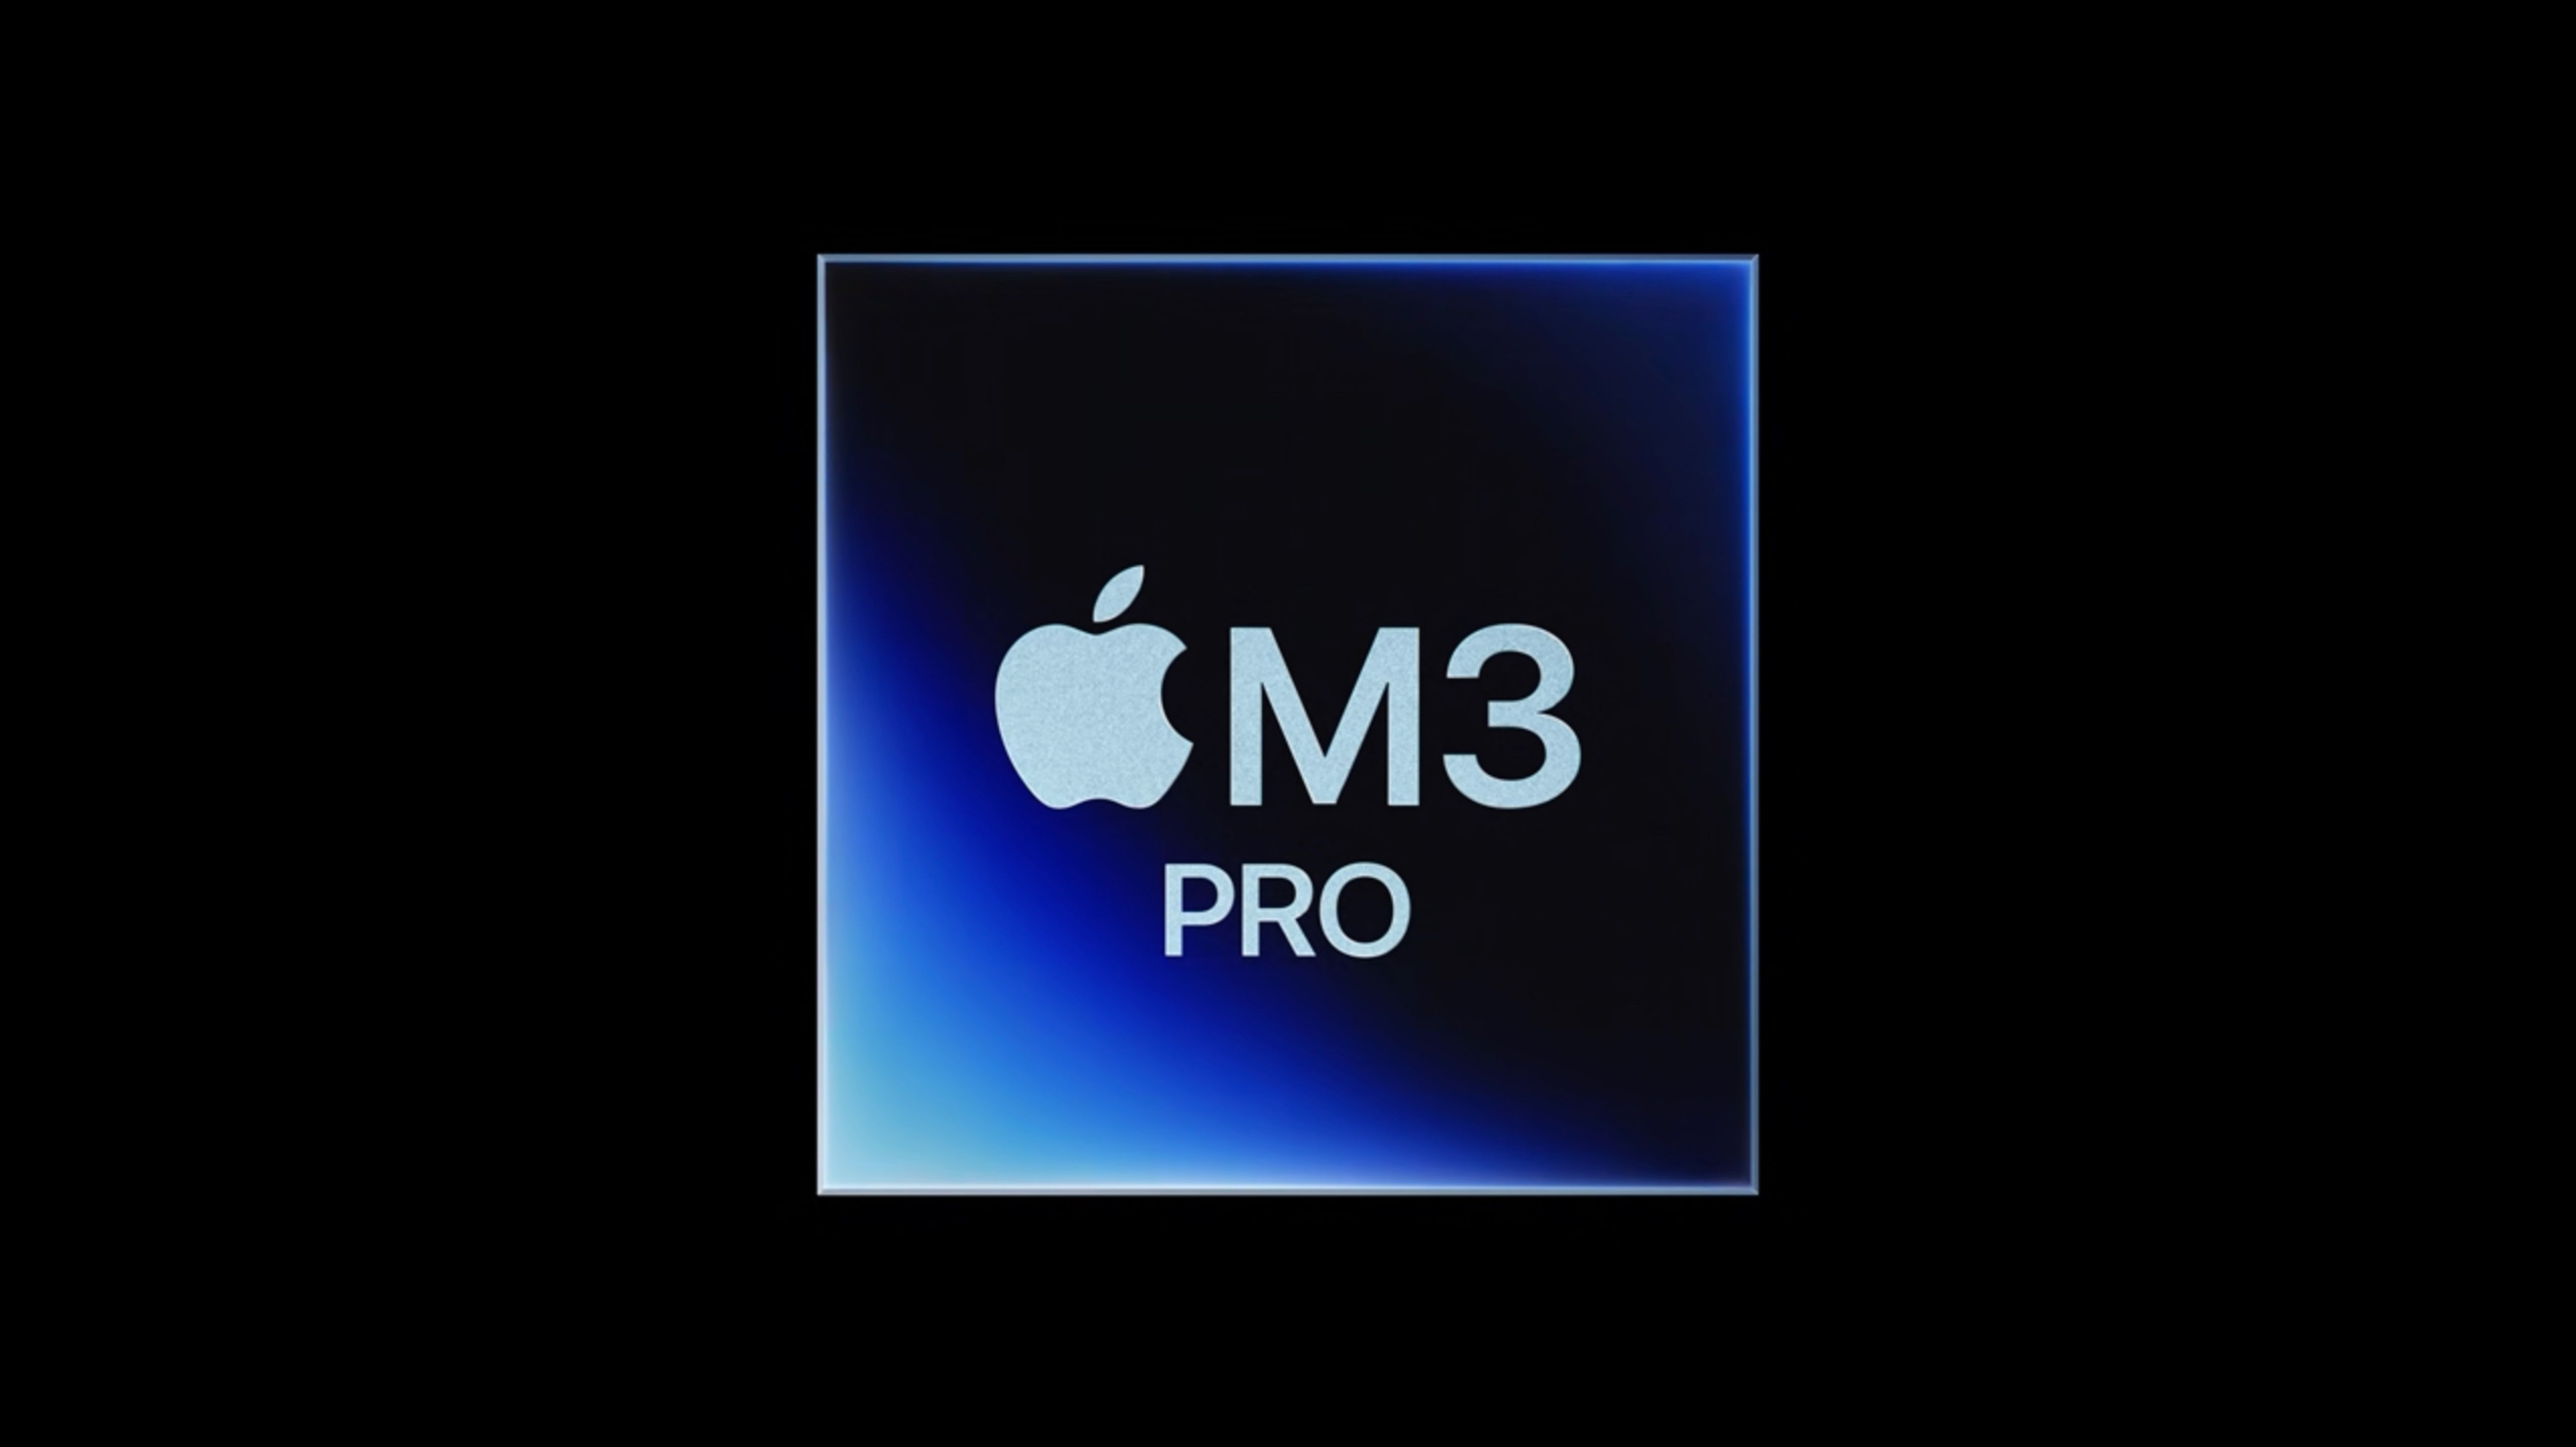 Čip M3 Pro je sotva rychlejší než čip M2 Pro v neověřeném výsledku benchmarku